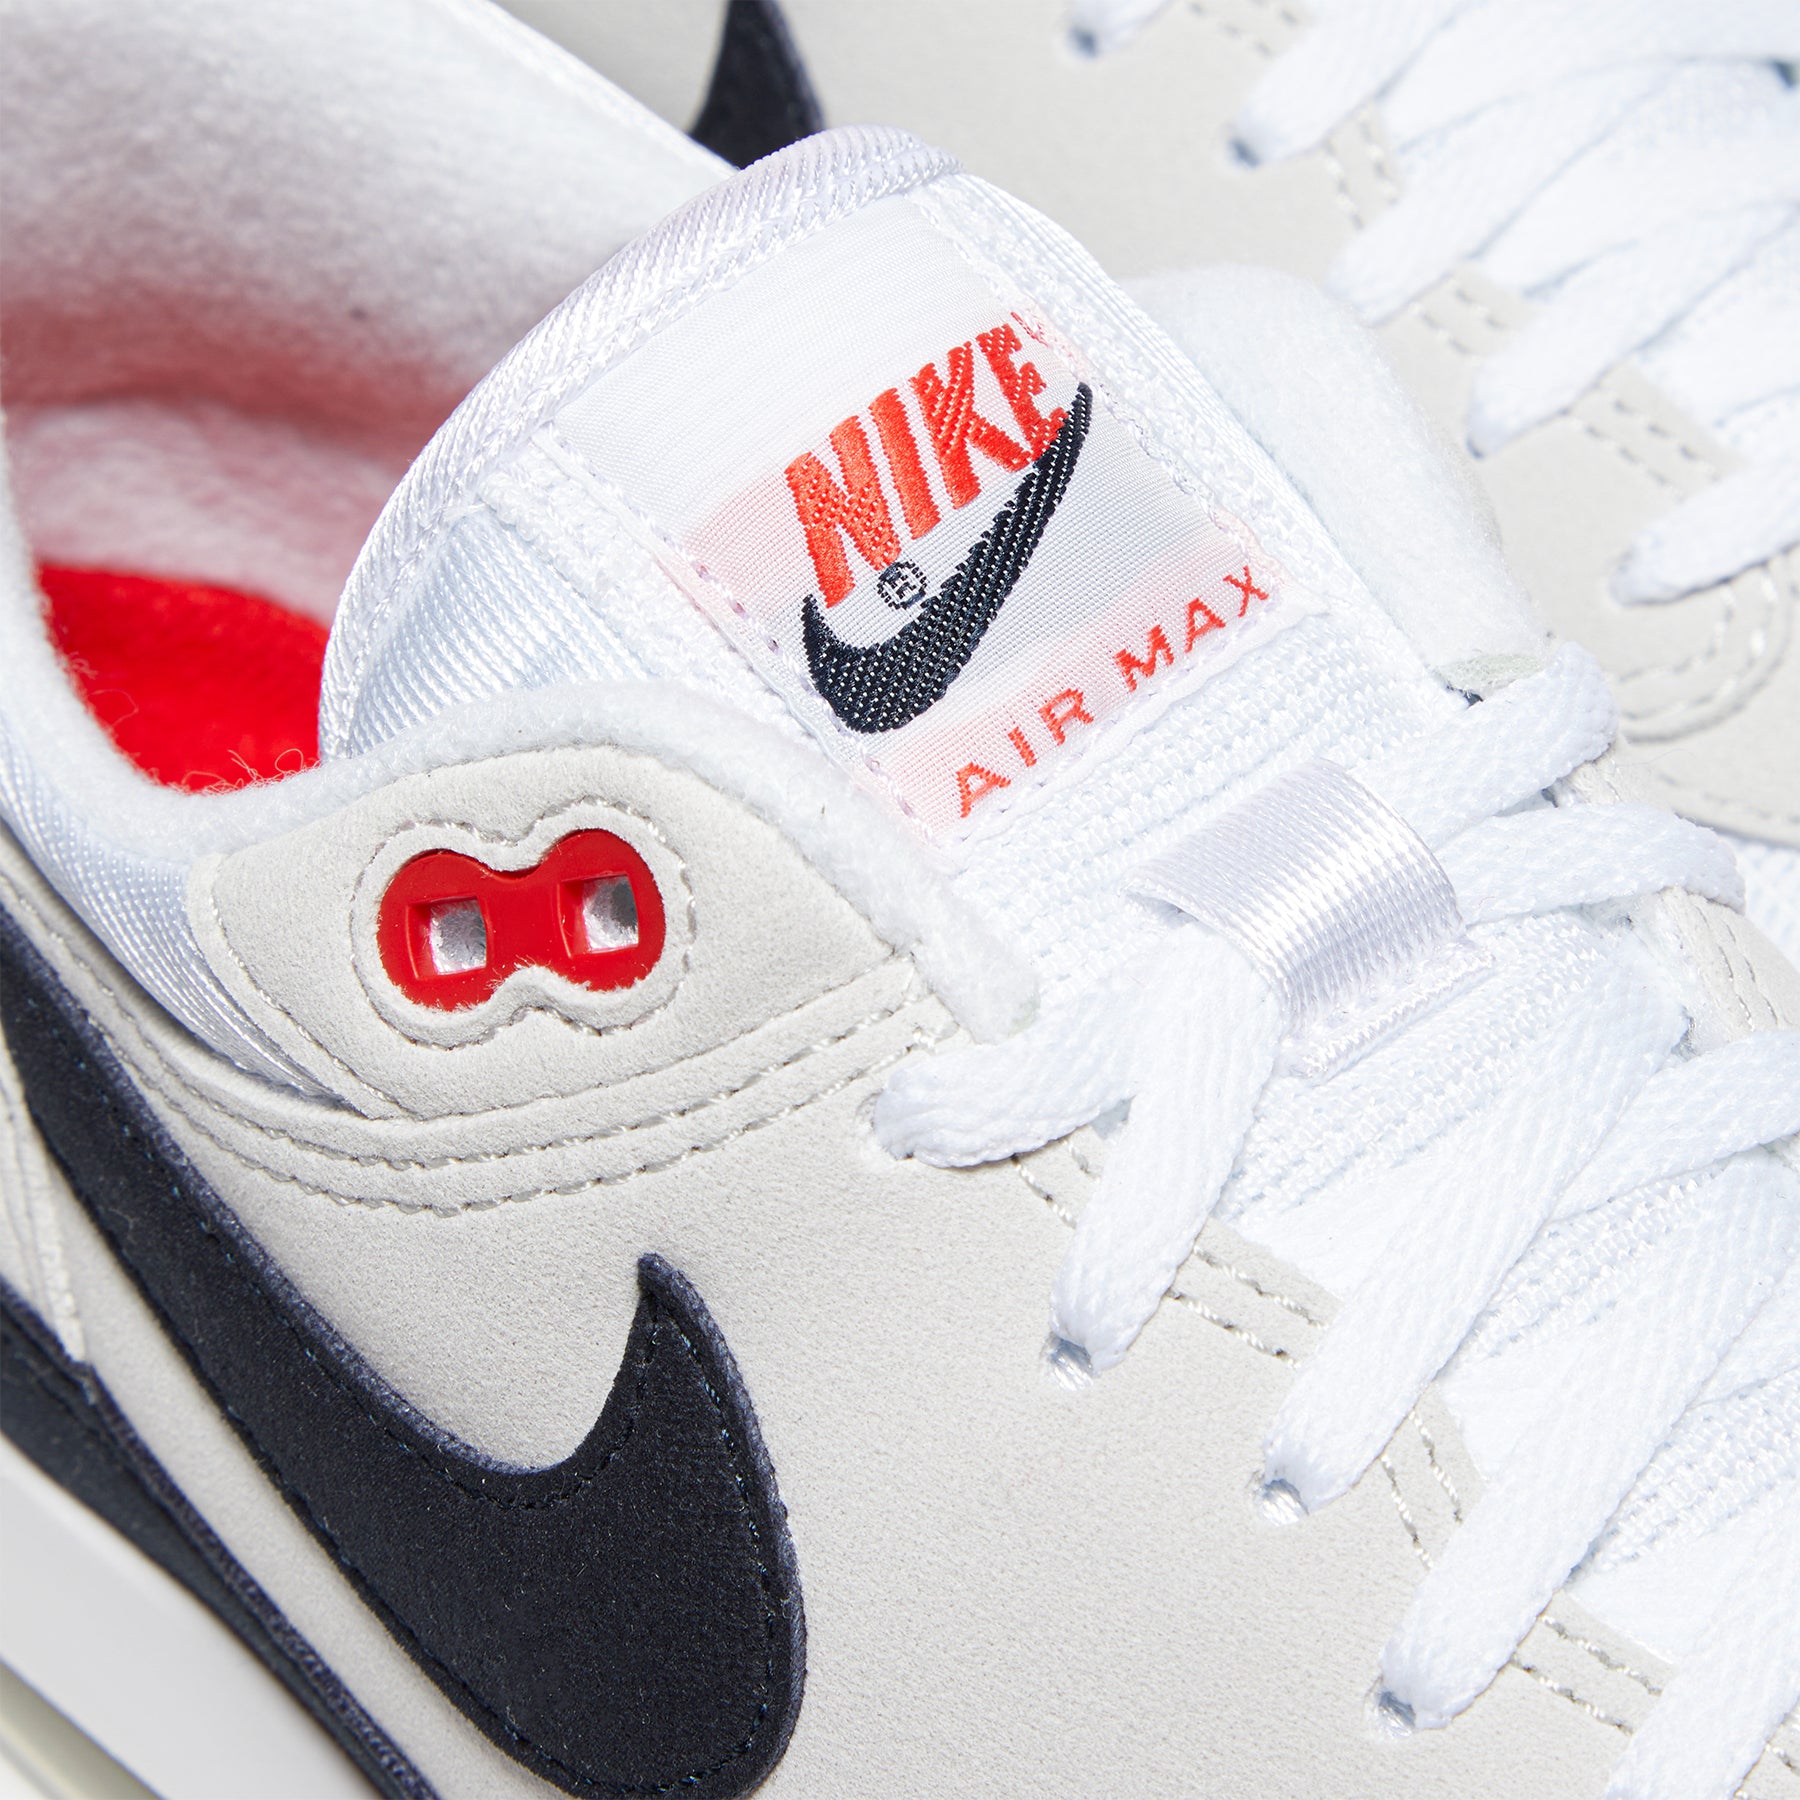 Nike Air Max 1 '86 Premium Sneakers